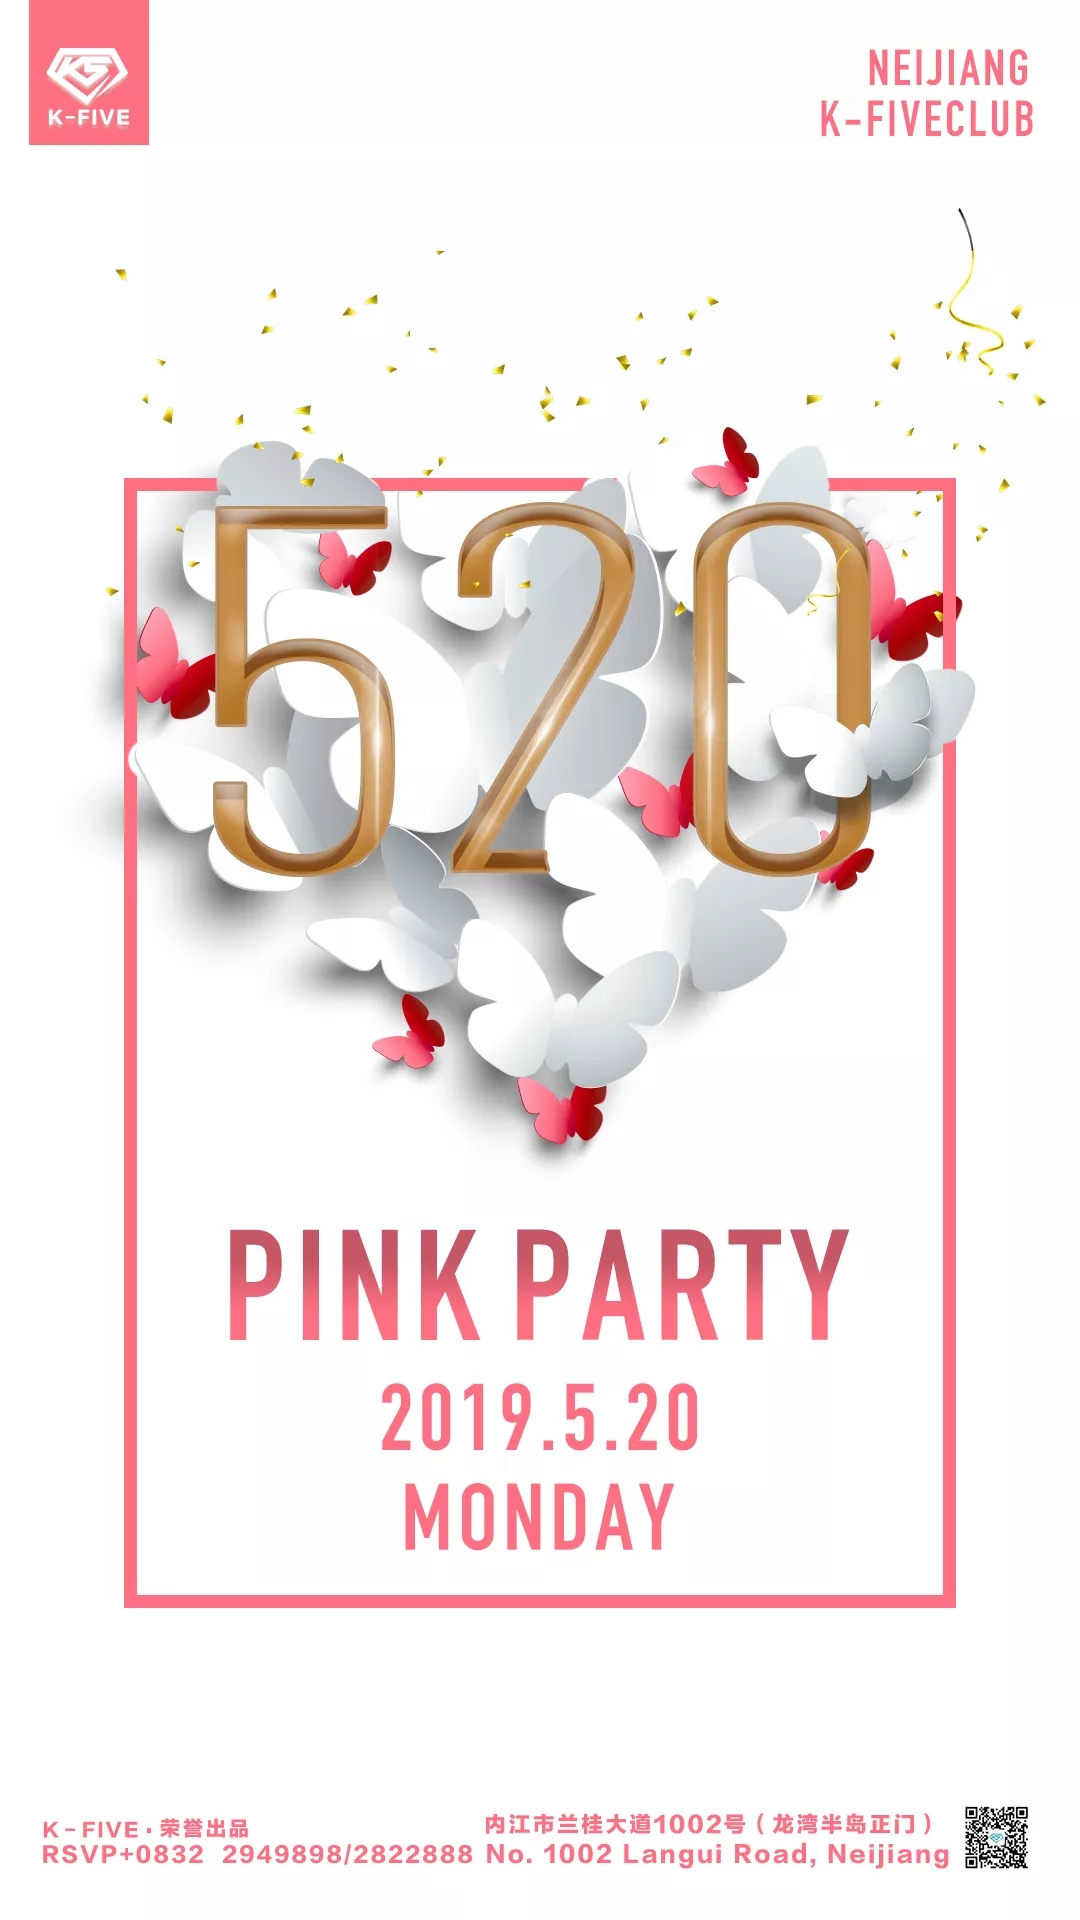 派对预告：【5.20】情人节主题PINK PARTY，内江K-FIVE 内江K5派对空间  6天前